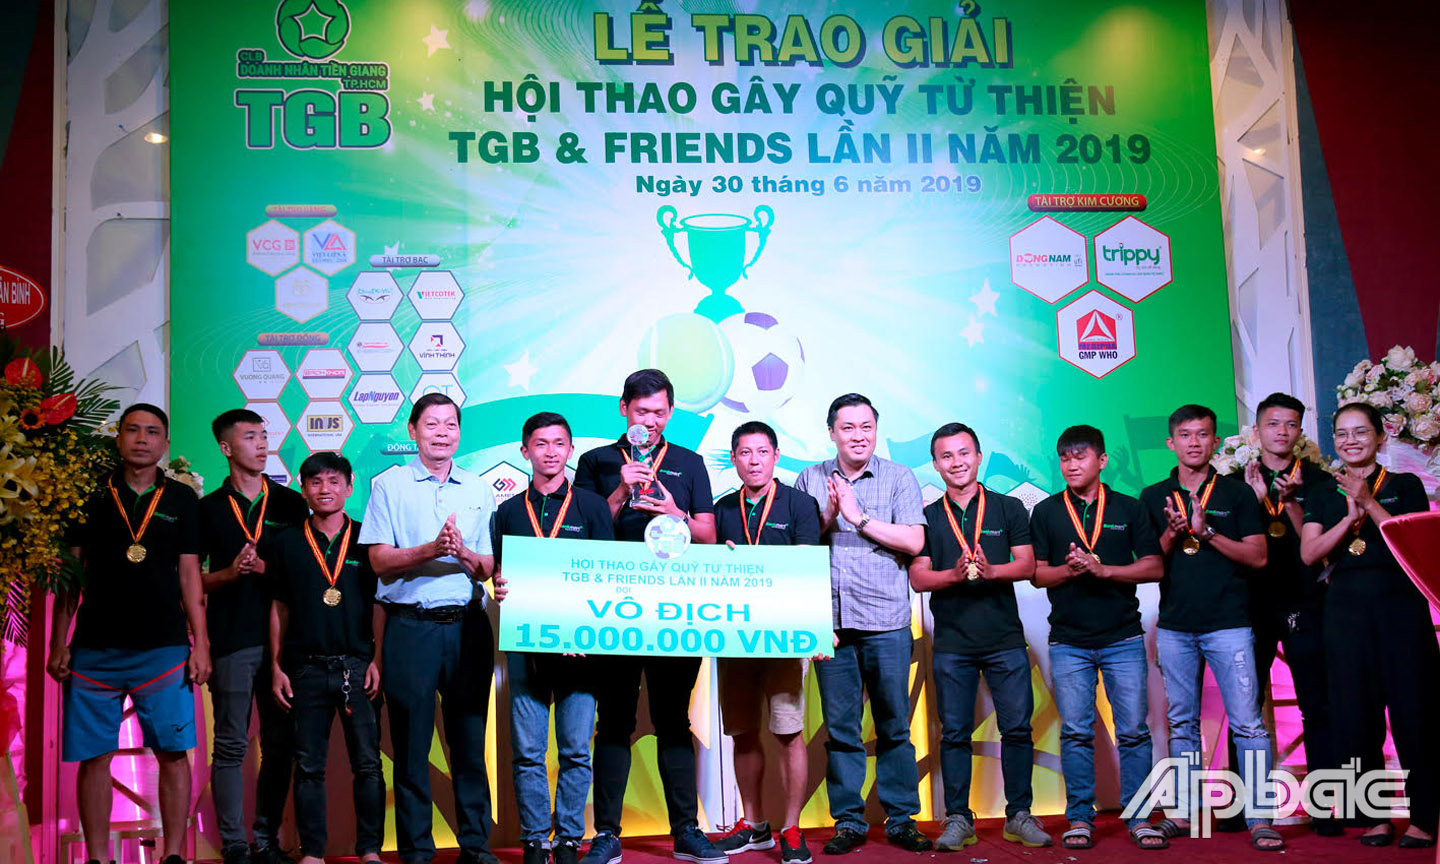 BTC trao giải vô địch cho đội VCG - Bankmart ở nội dung bóng đá